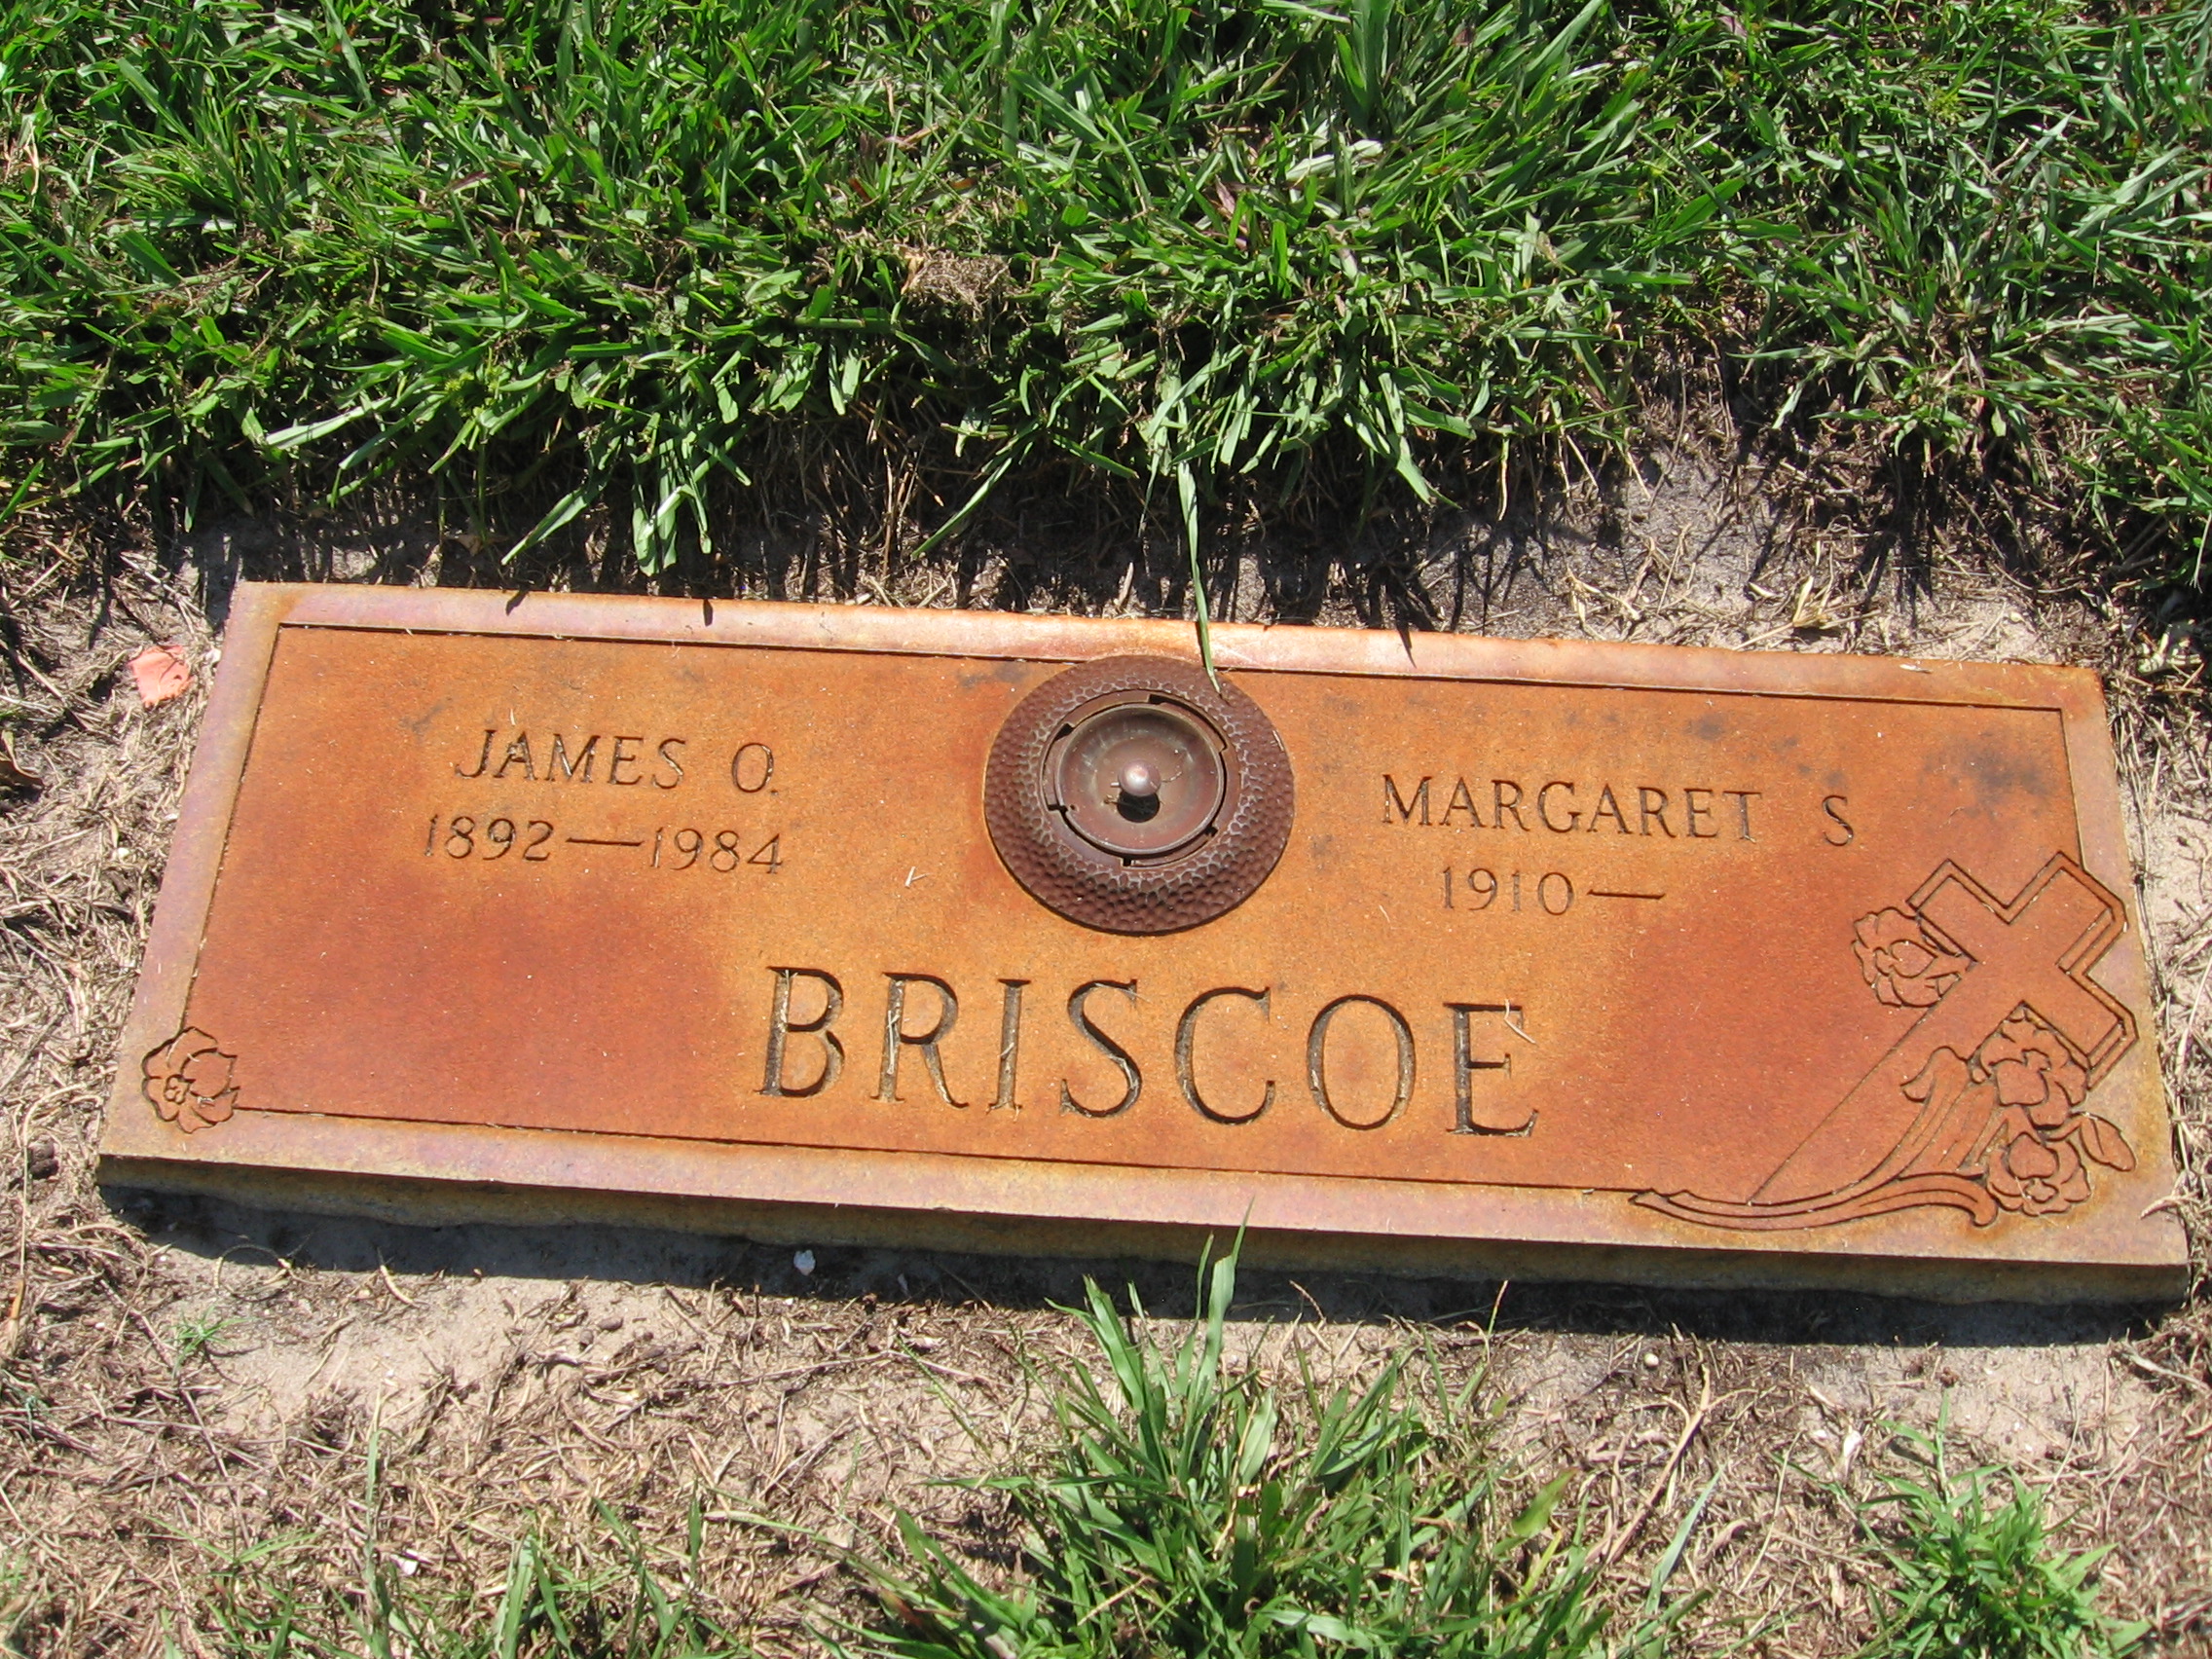 Margaret S Briscoe